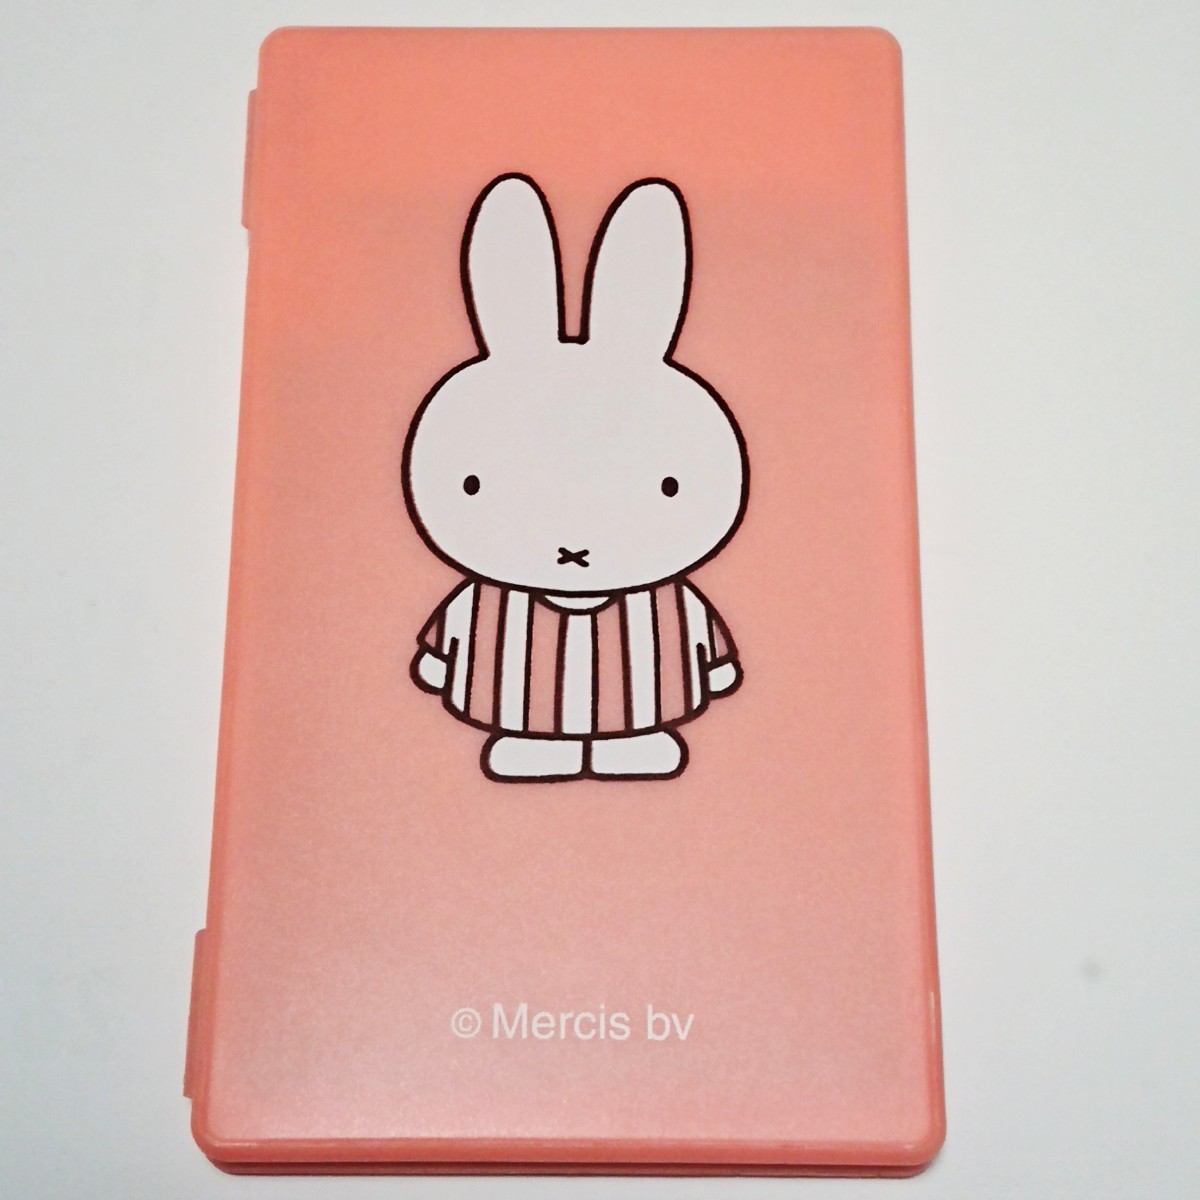 [ в Японии не продается ] Miffy ×MIPOW* калькулятор & электронный память накладка розовый miffy портативный счет машина новый товар бесплатная доставка мой Poe планшет ....